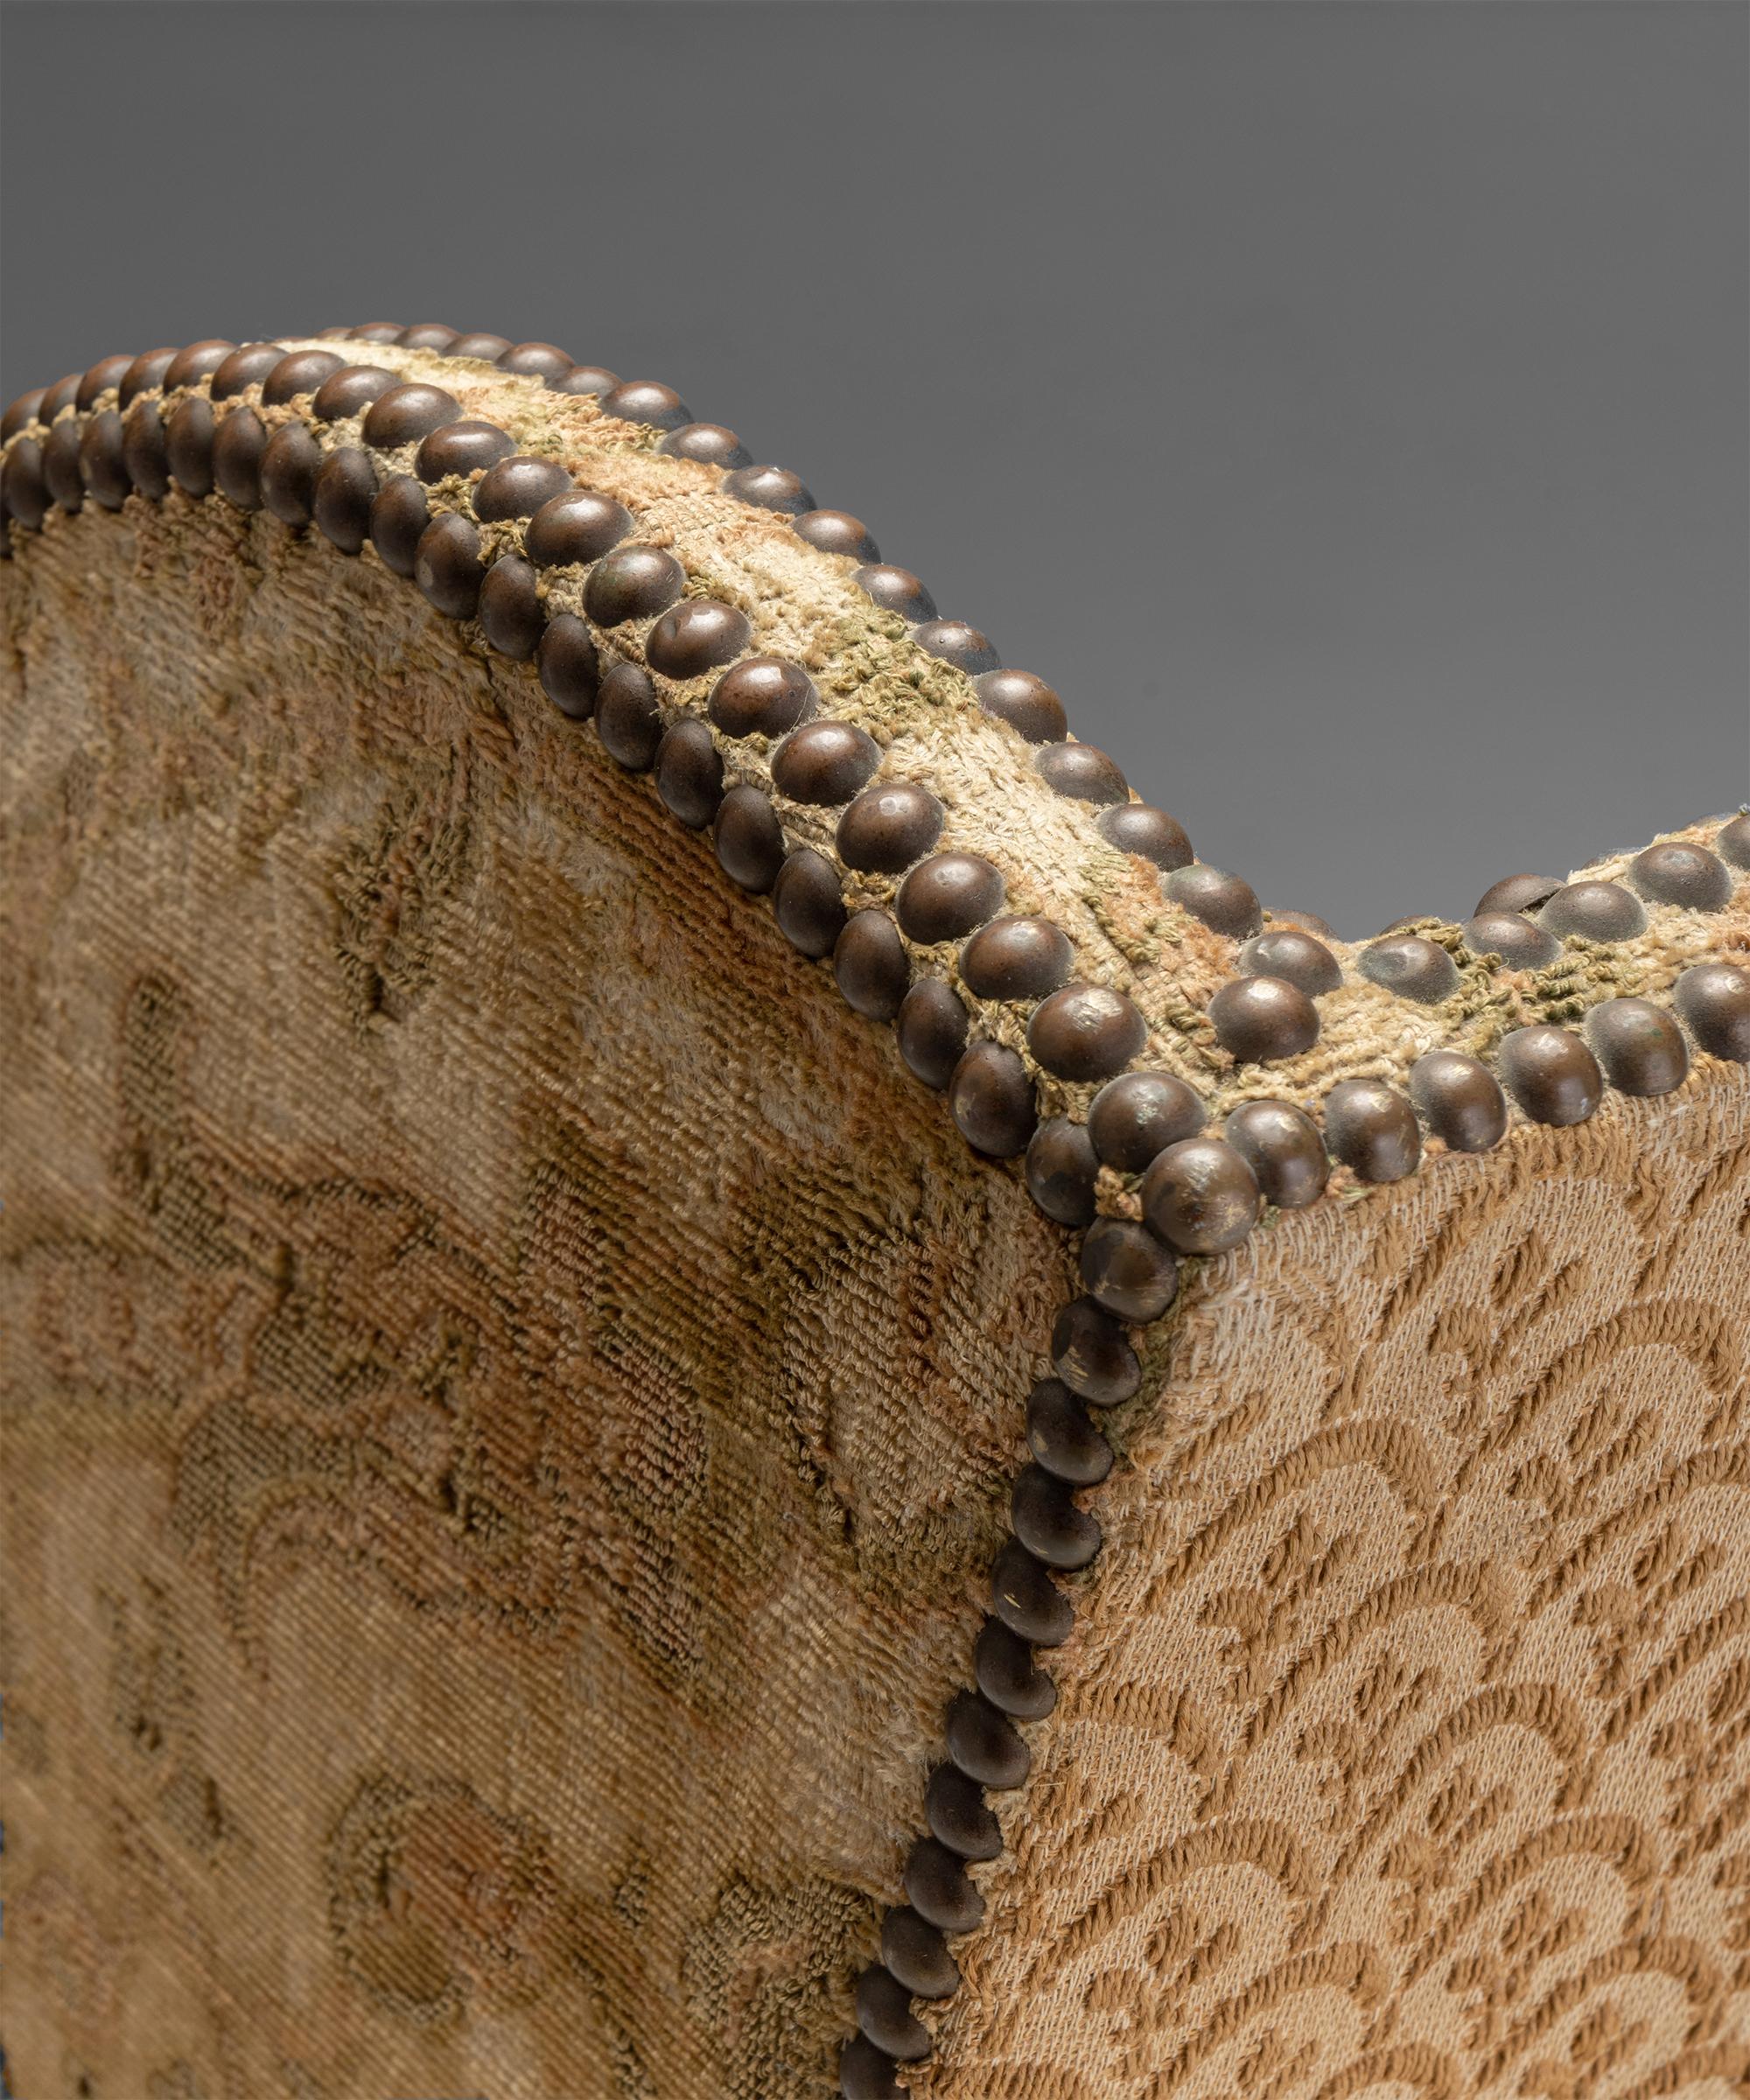 Upholstery Os De Mouton Sofa, France circa 1750